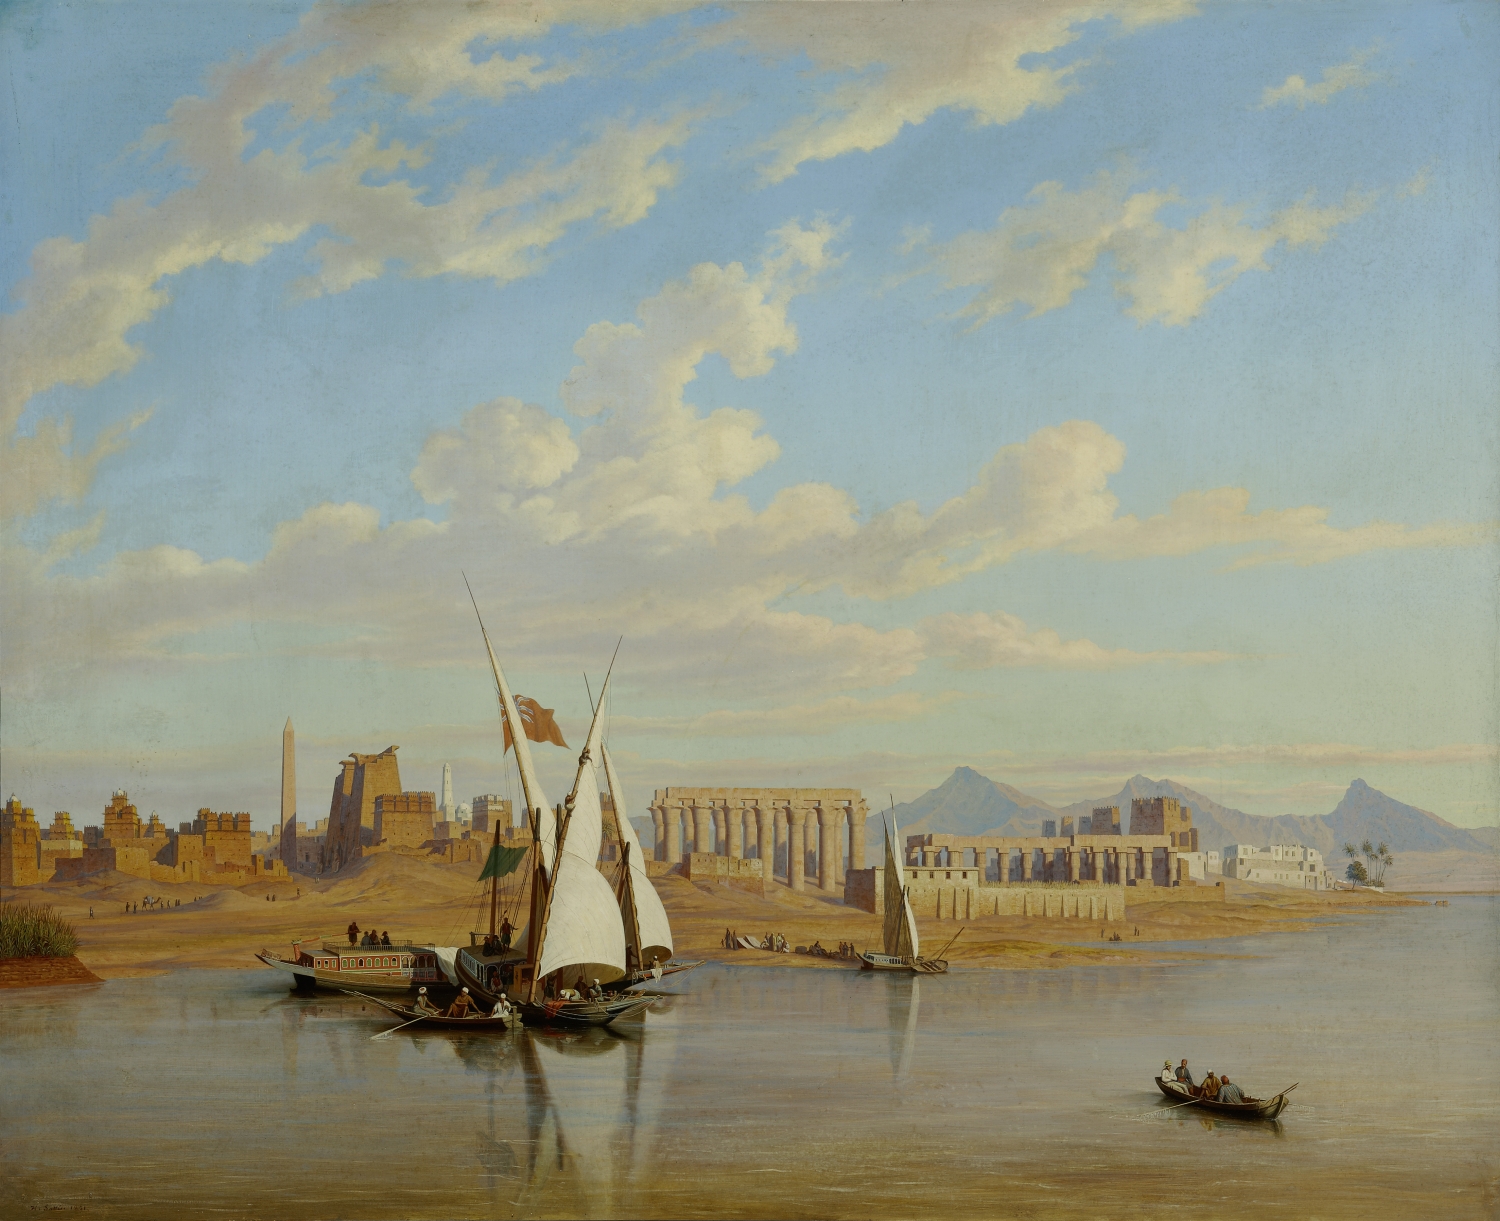 Die Ruinen von Luxor in Theben (Ägypten), 1851, Öl auf Leinwand, Inv.-Nr. 7141-49